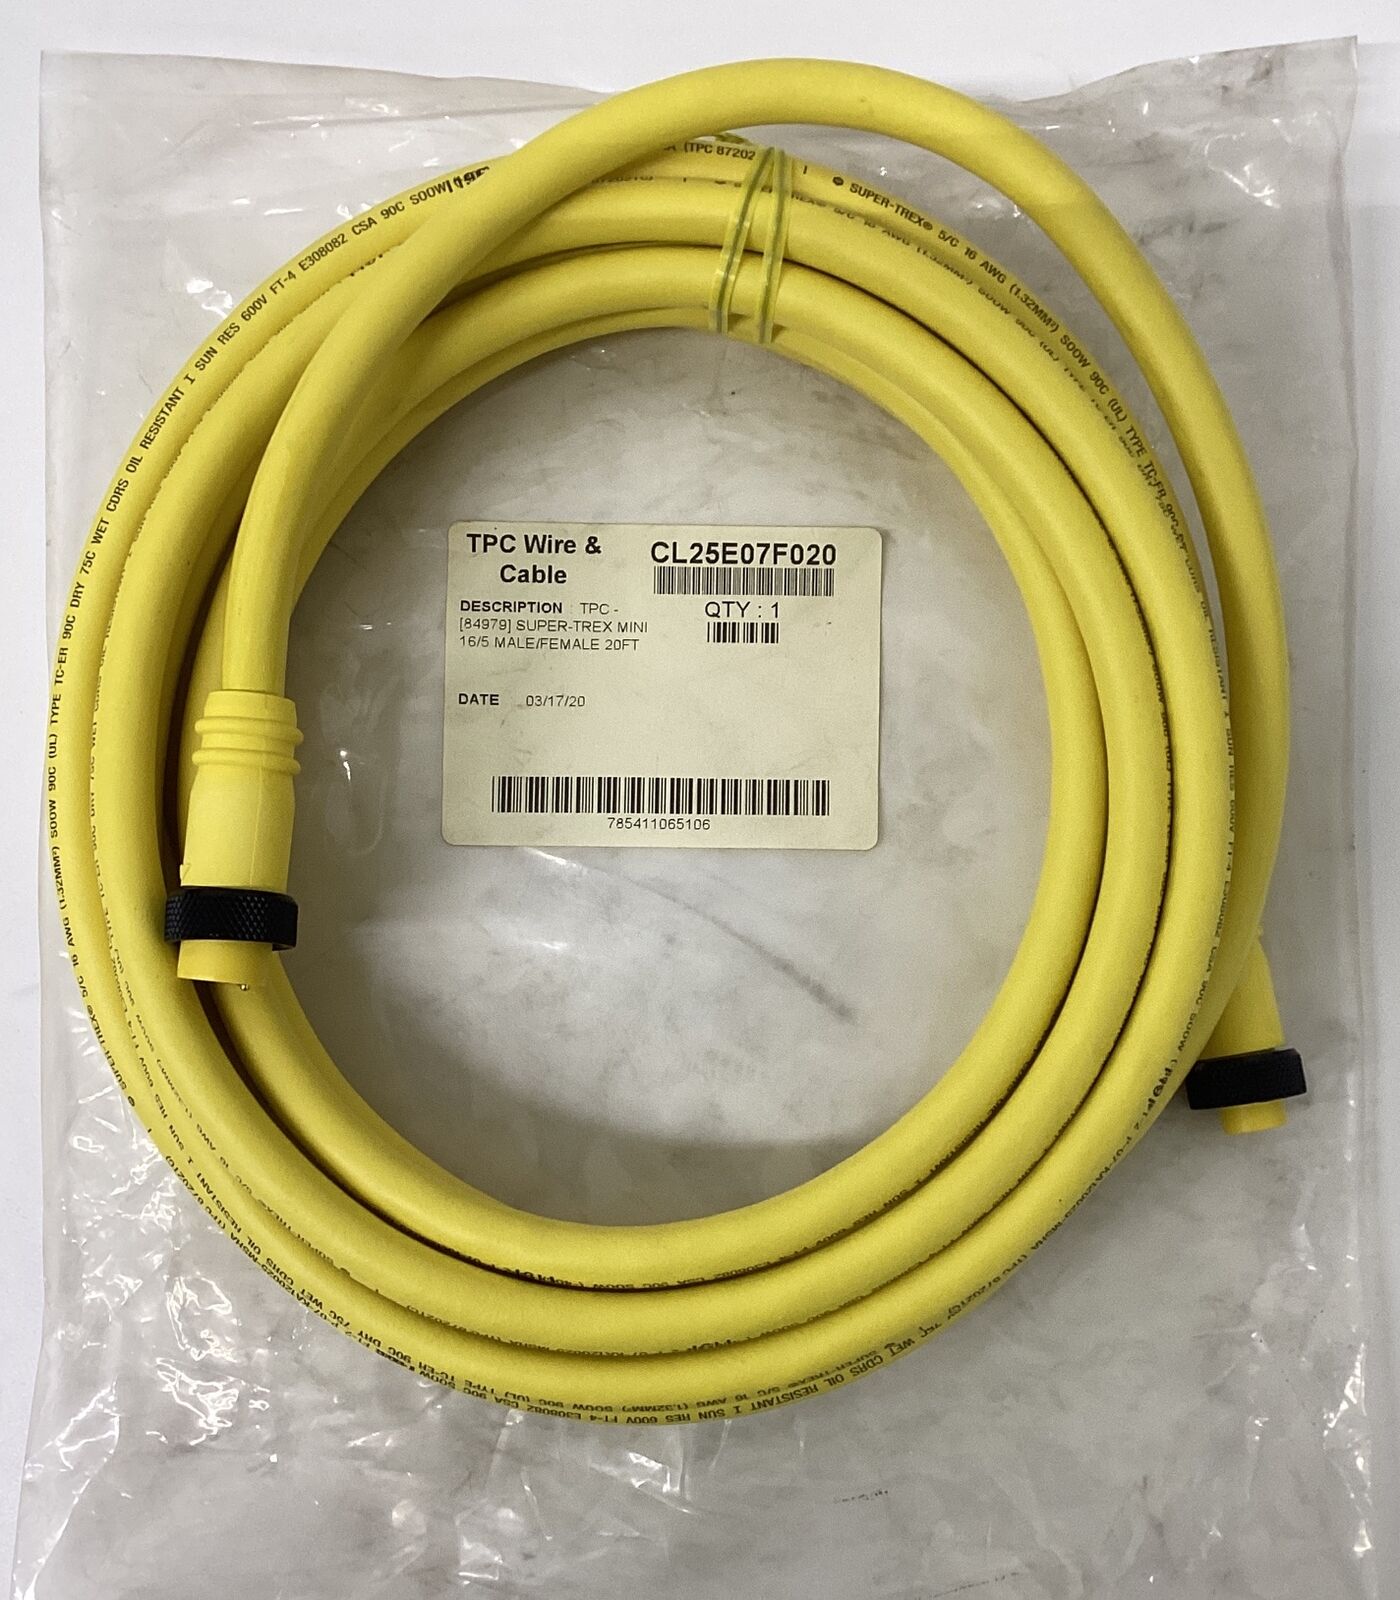 TPC Wire & Cable CL25E07F020 Super-Trex Mini 16/5 Male/Female 20FT (CBL148) - 0